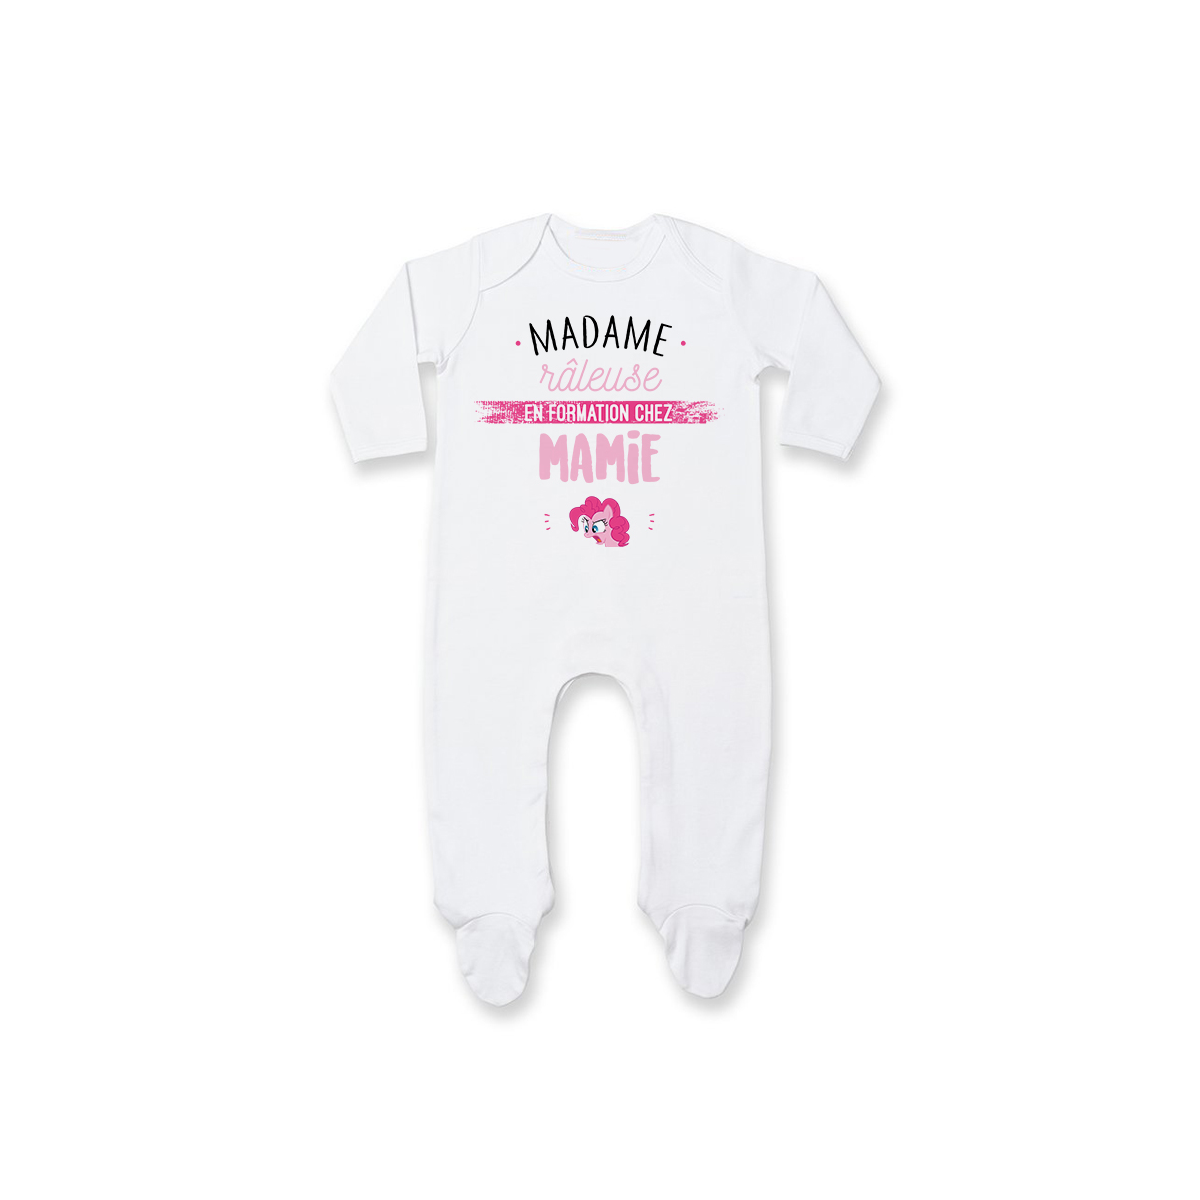 Pyjama bébé Madame râleuse - Mamie